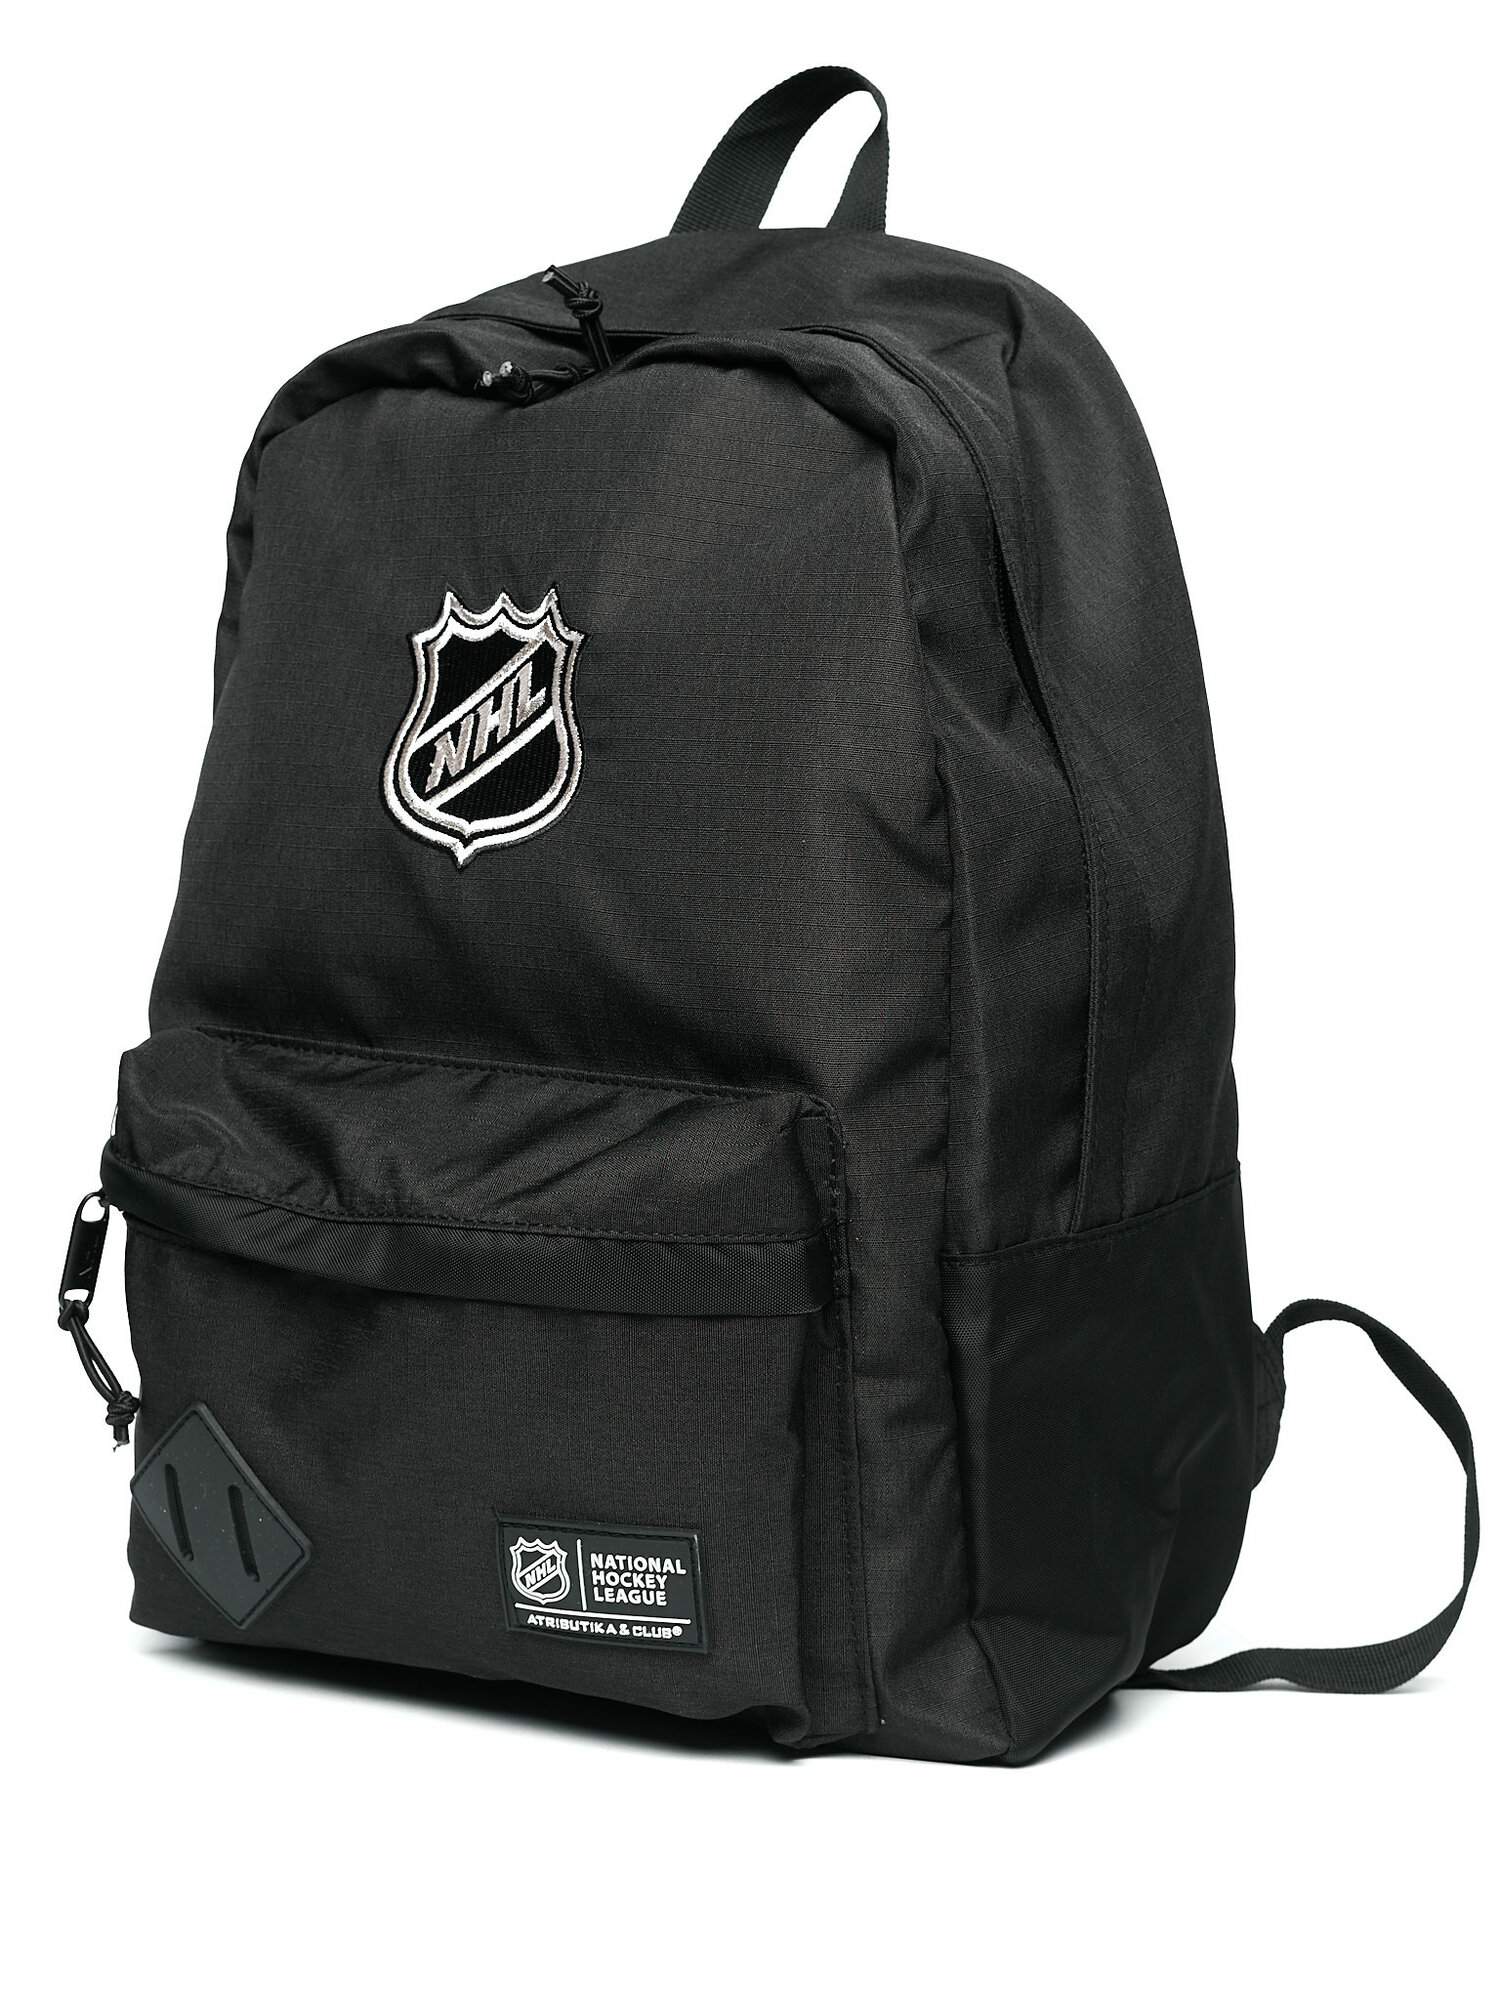 Рюкзак городской, спортивный, дорожный с логотипом NHL (НХЛ); рюкзак для подростка